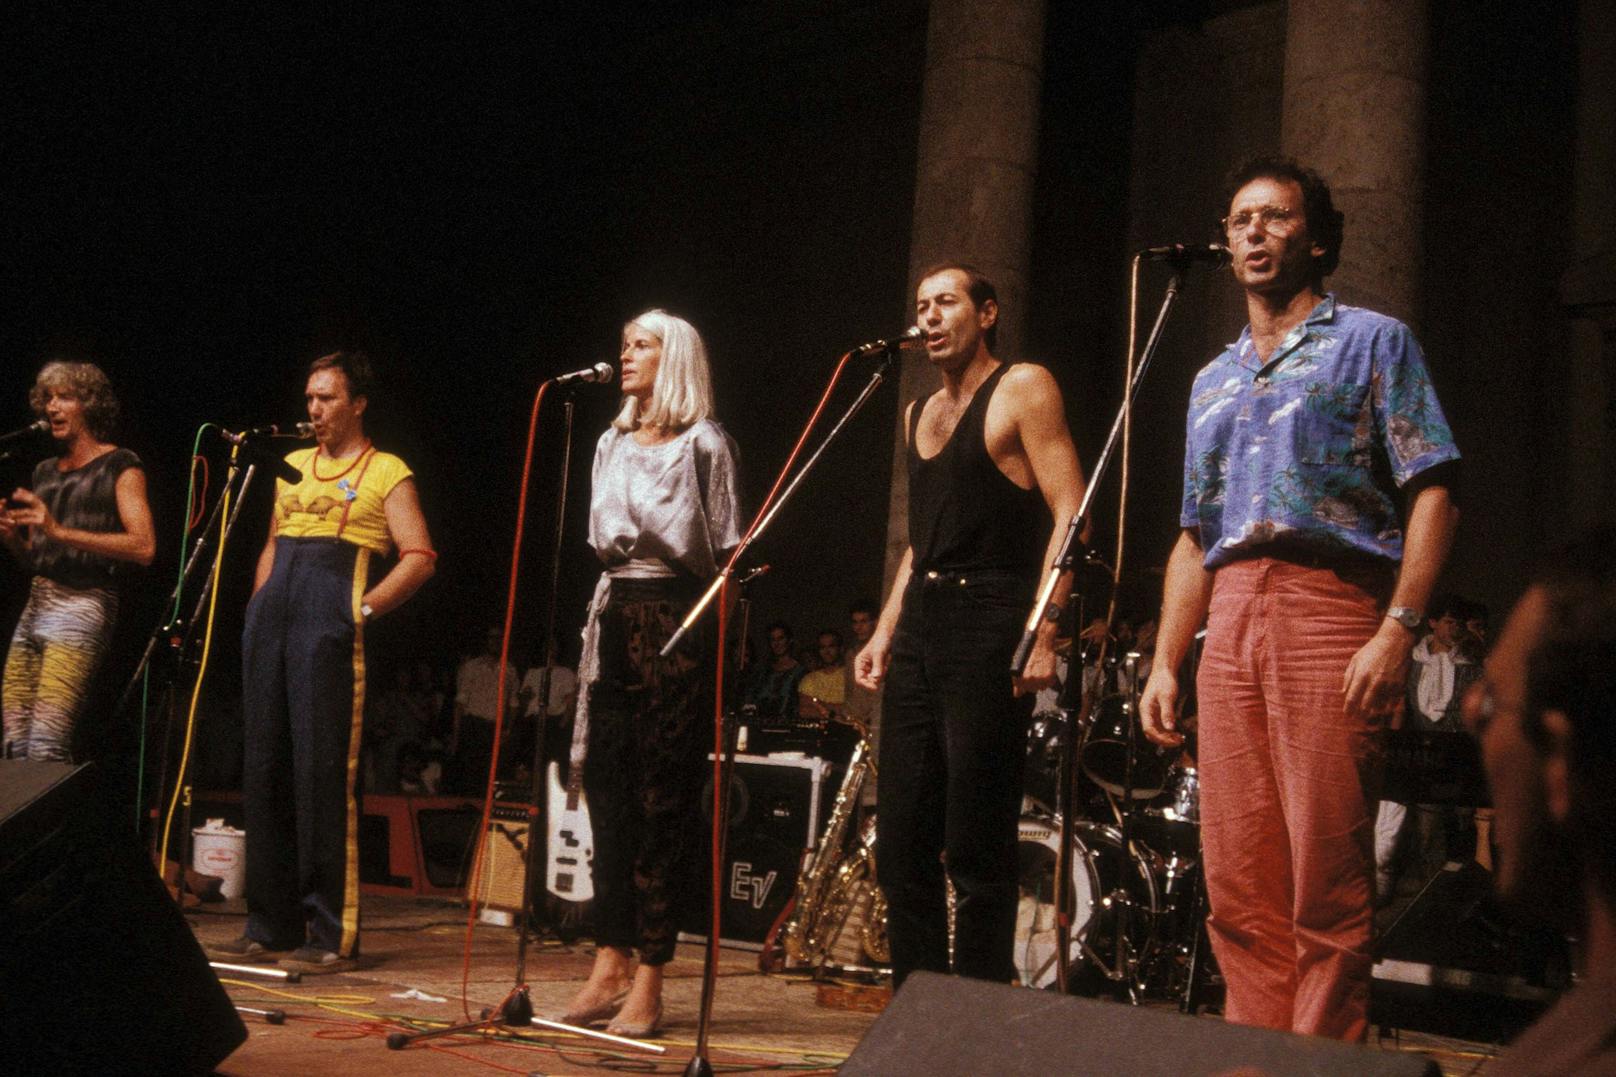 Die Schmetterlinge 1986 in München. Mit dem Song "Boom-Boom-Boomerang" nahm die Formation 1977 am Song Contest teil.